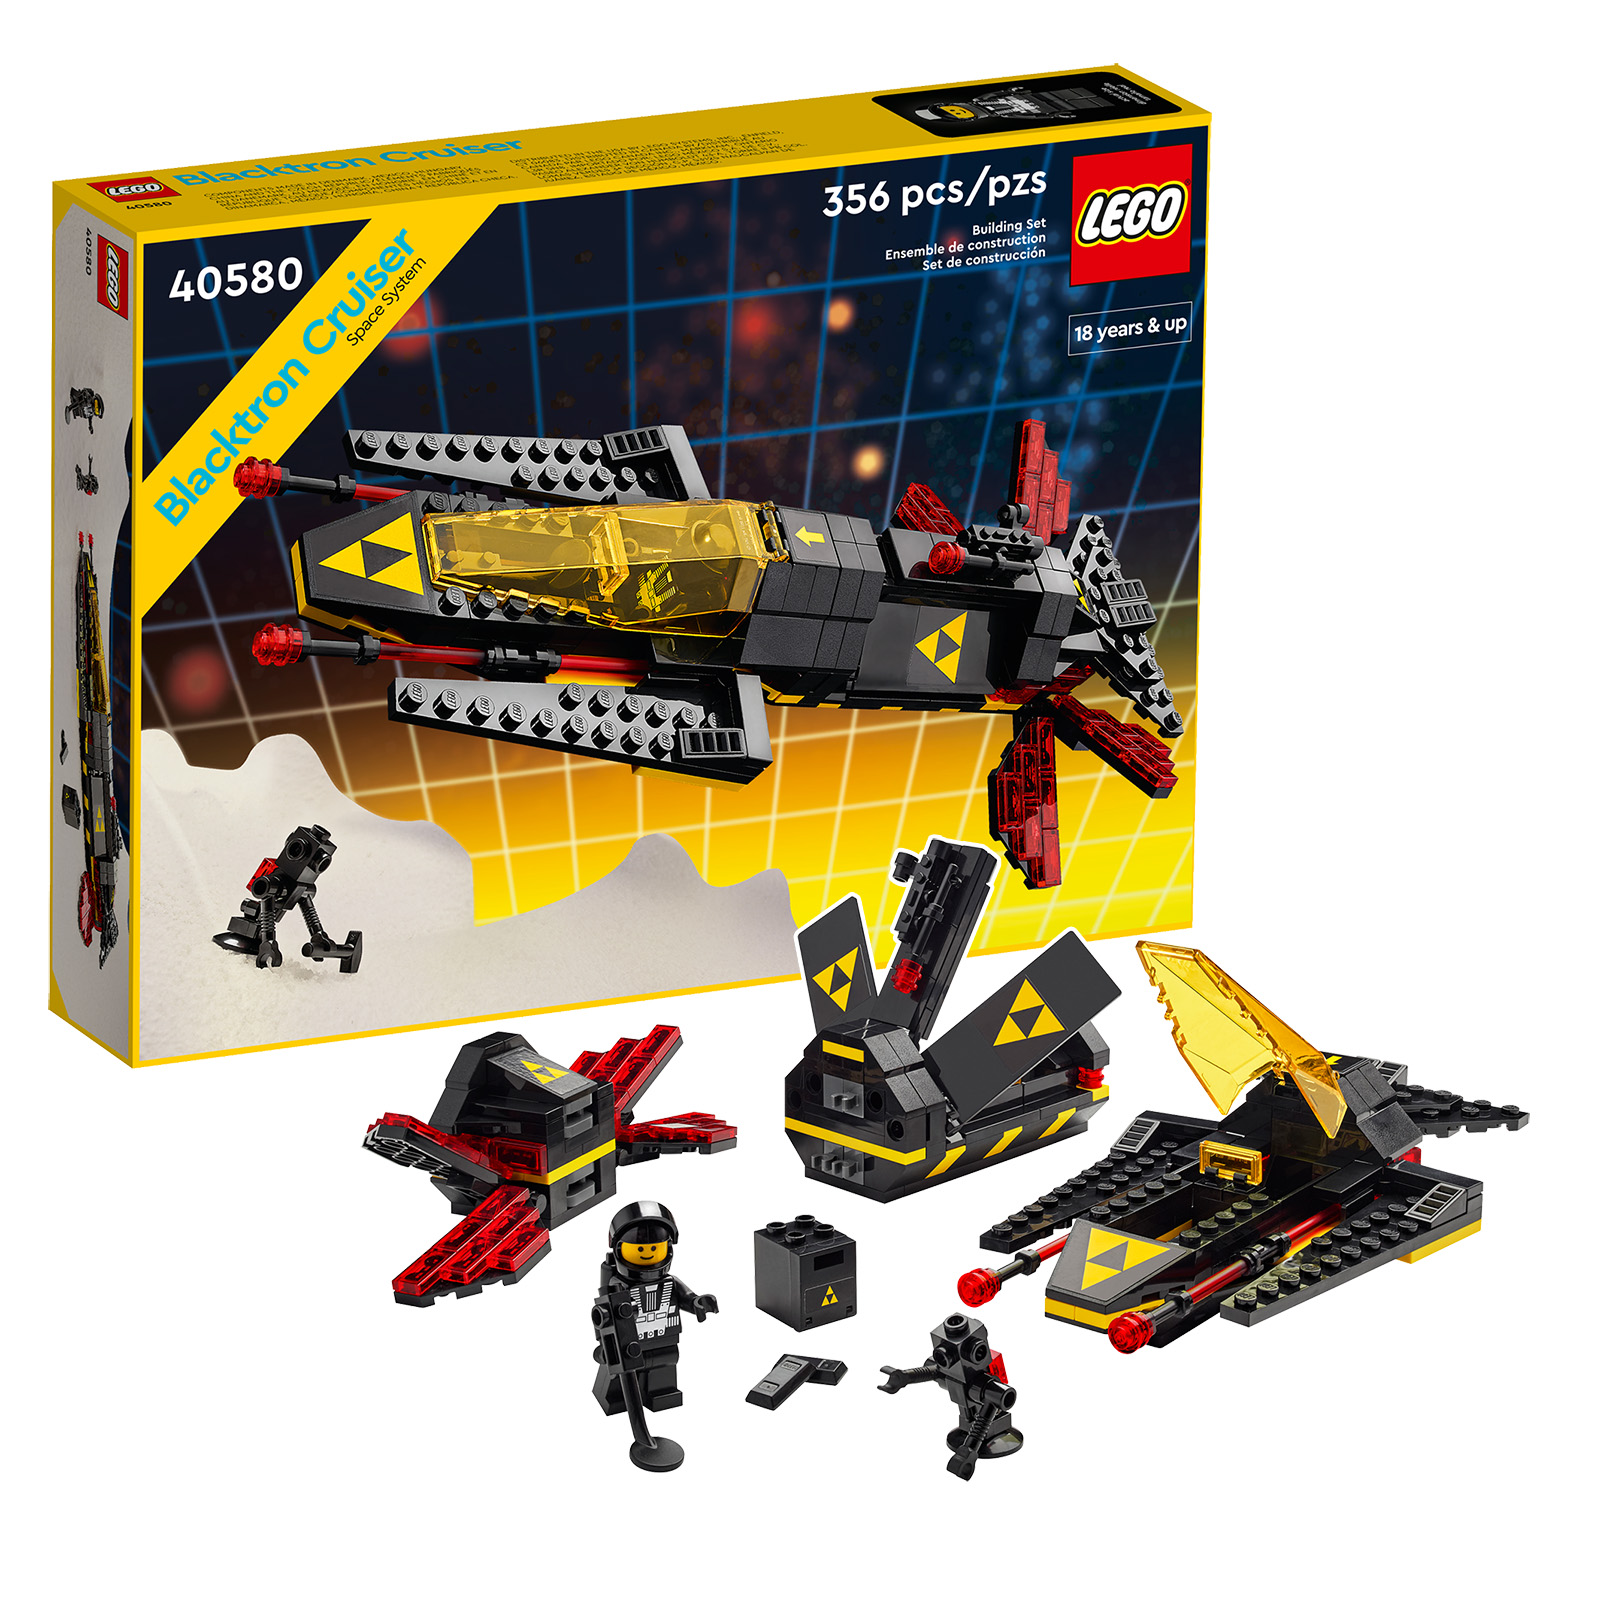 В LEGO Shop: Последни часове, за да получите безплатно комплекта 40580 Blacktron Cruiser от 190 € при покупка